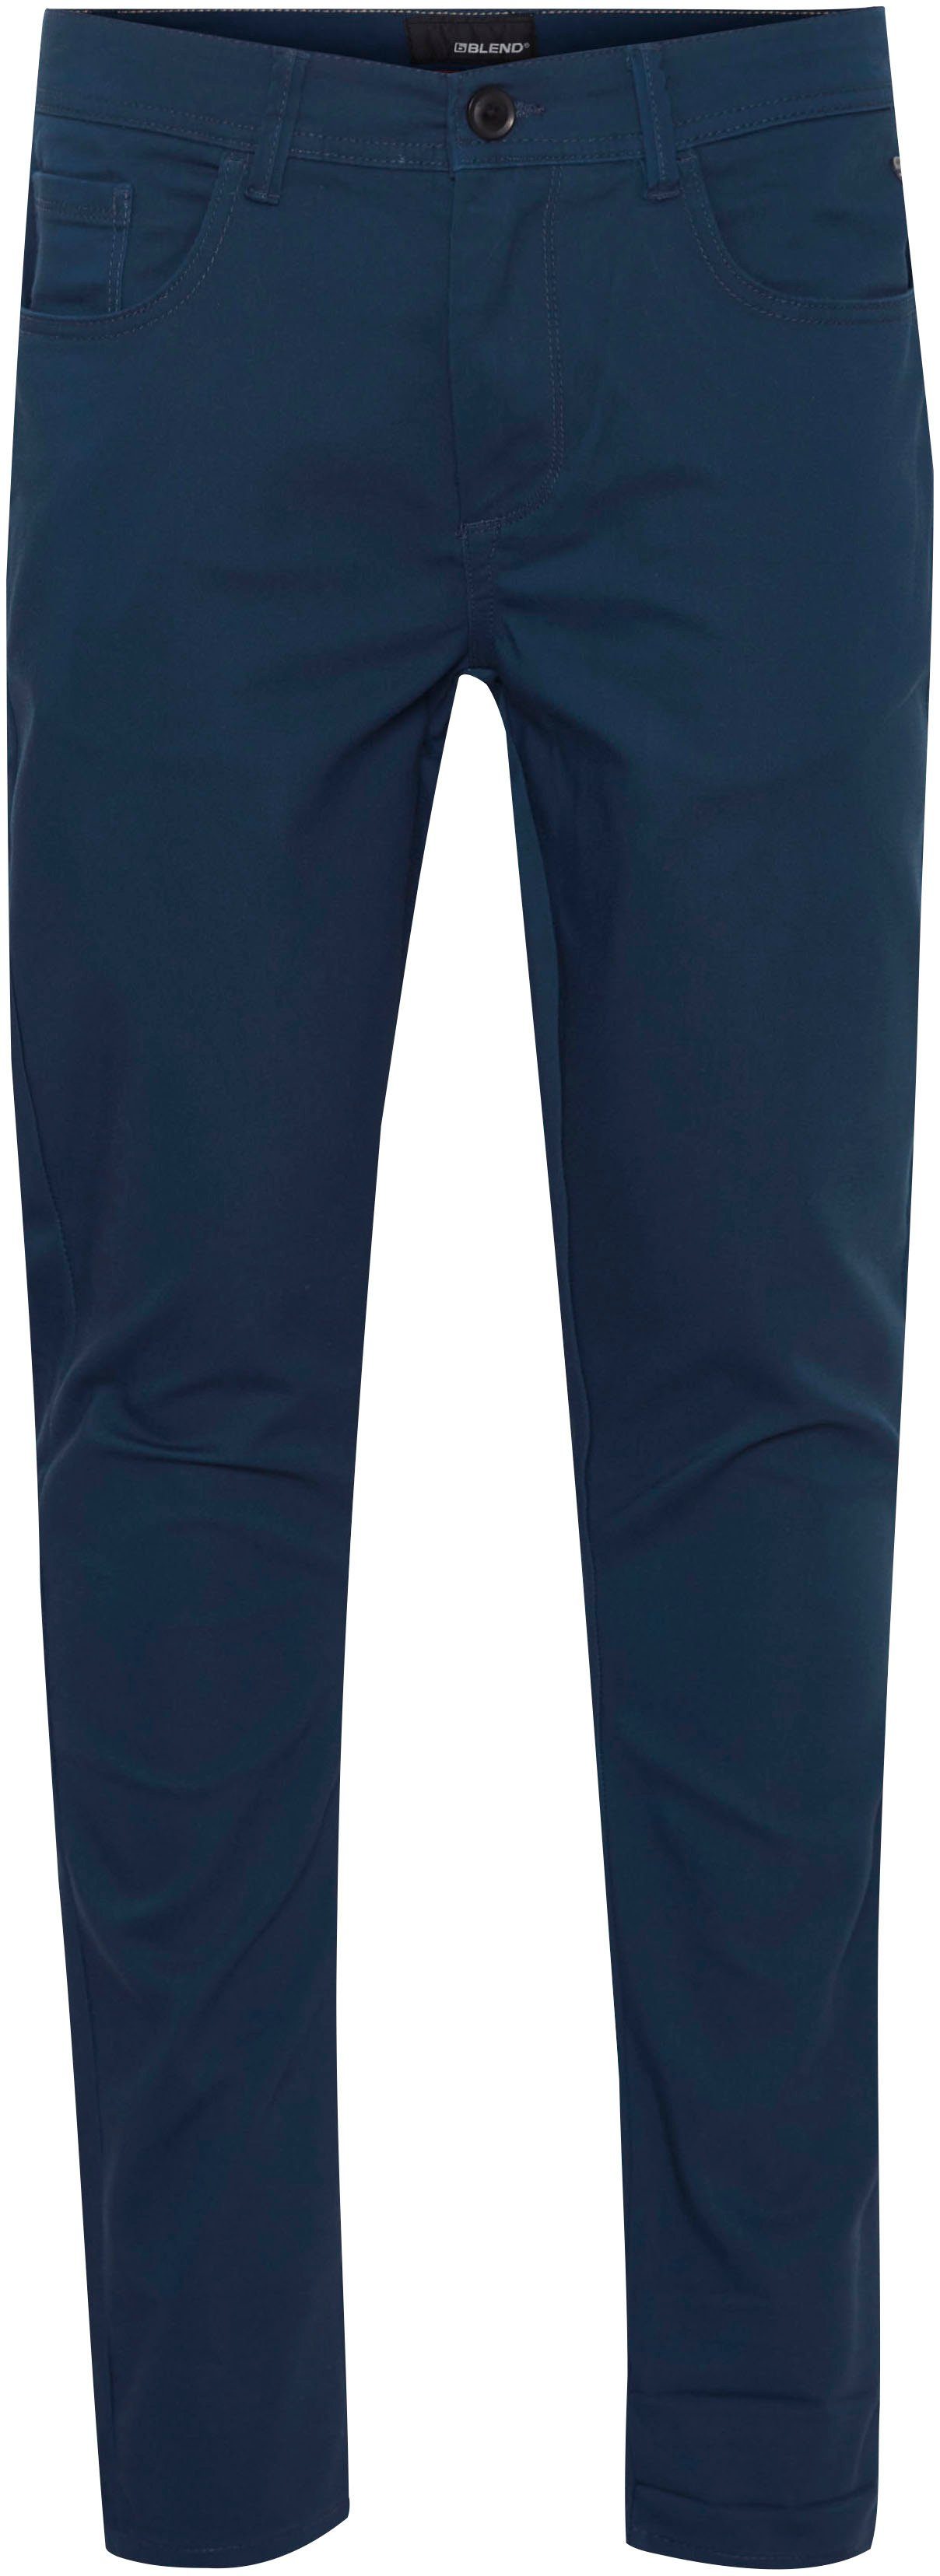 BL-Trousers 5-Pocket-Hose blue Blend